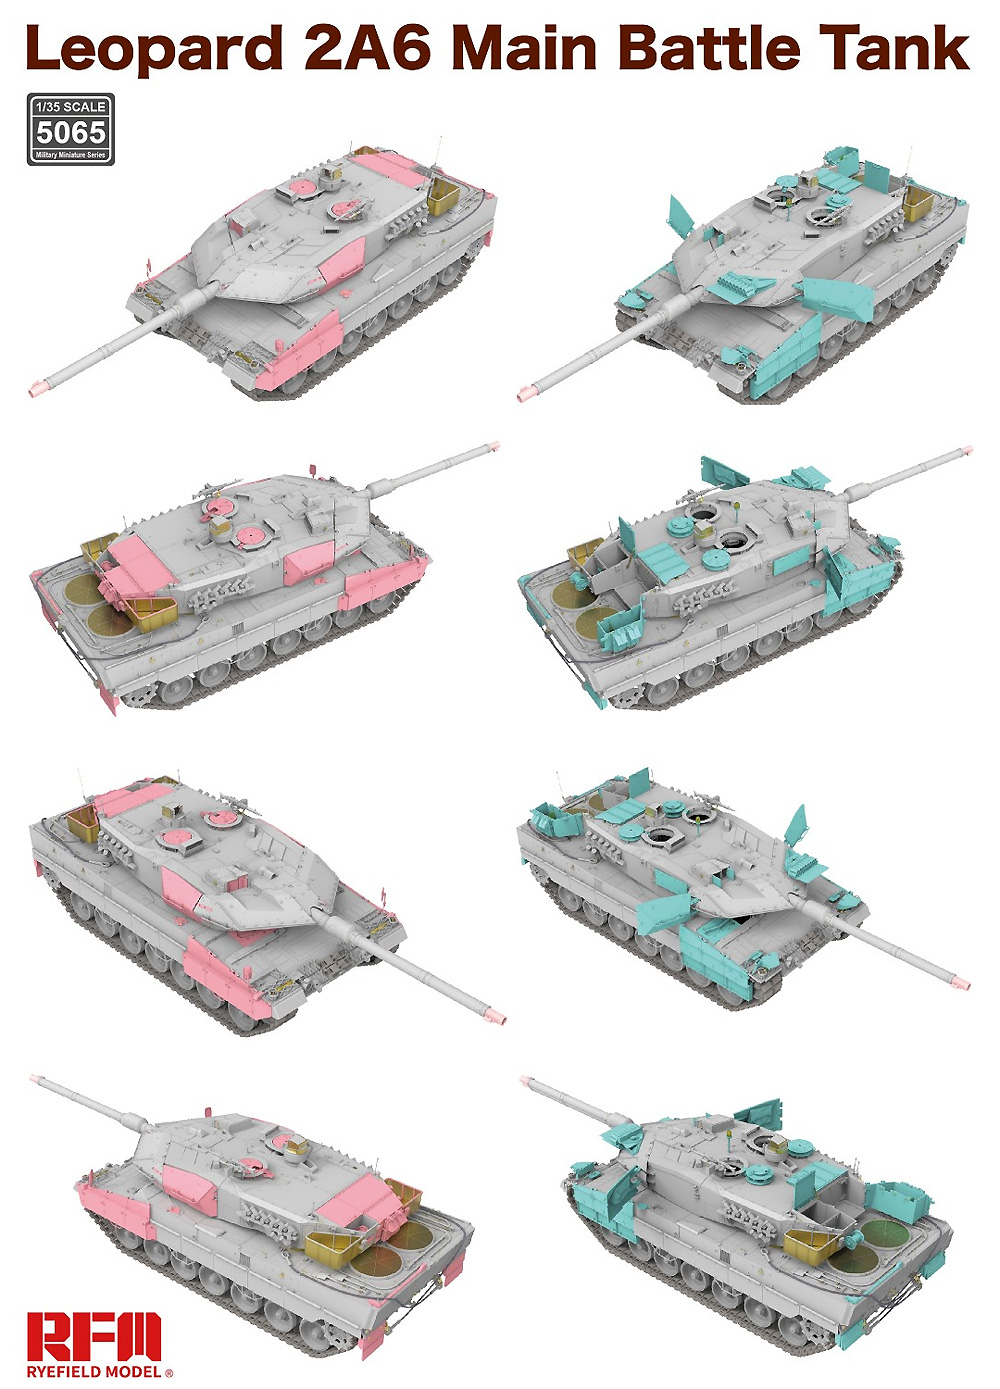 レオパルト 2A6 主力戦車 w/可動式履帯 プラモデル (ライ フィールド モデル 1/35 Military Miniature Series No.5065) 商品画像_4